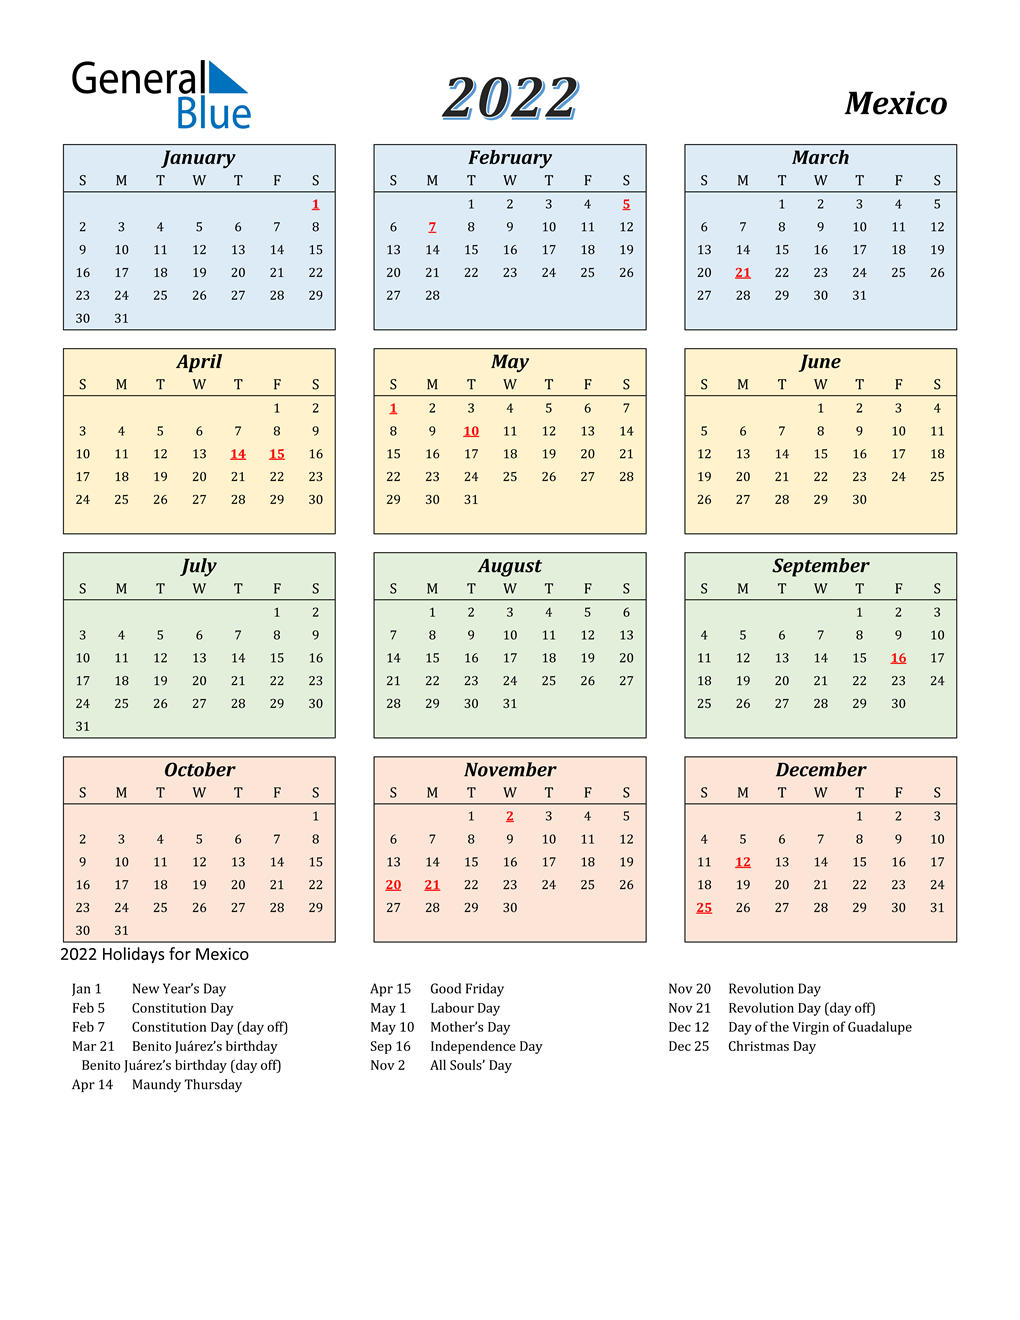 Mexican Calendar Names 2022 2022 Mexico Calendar With Holidays